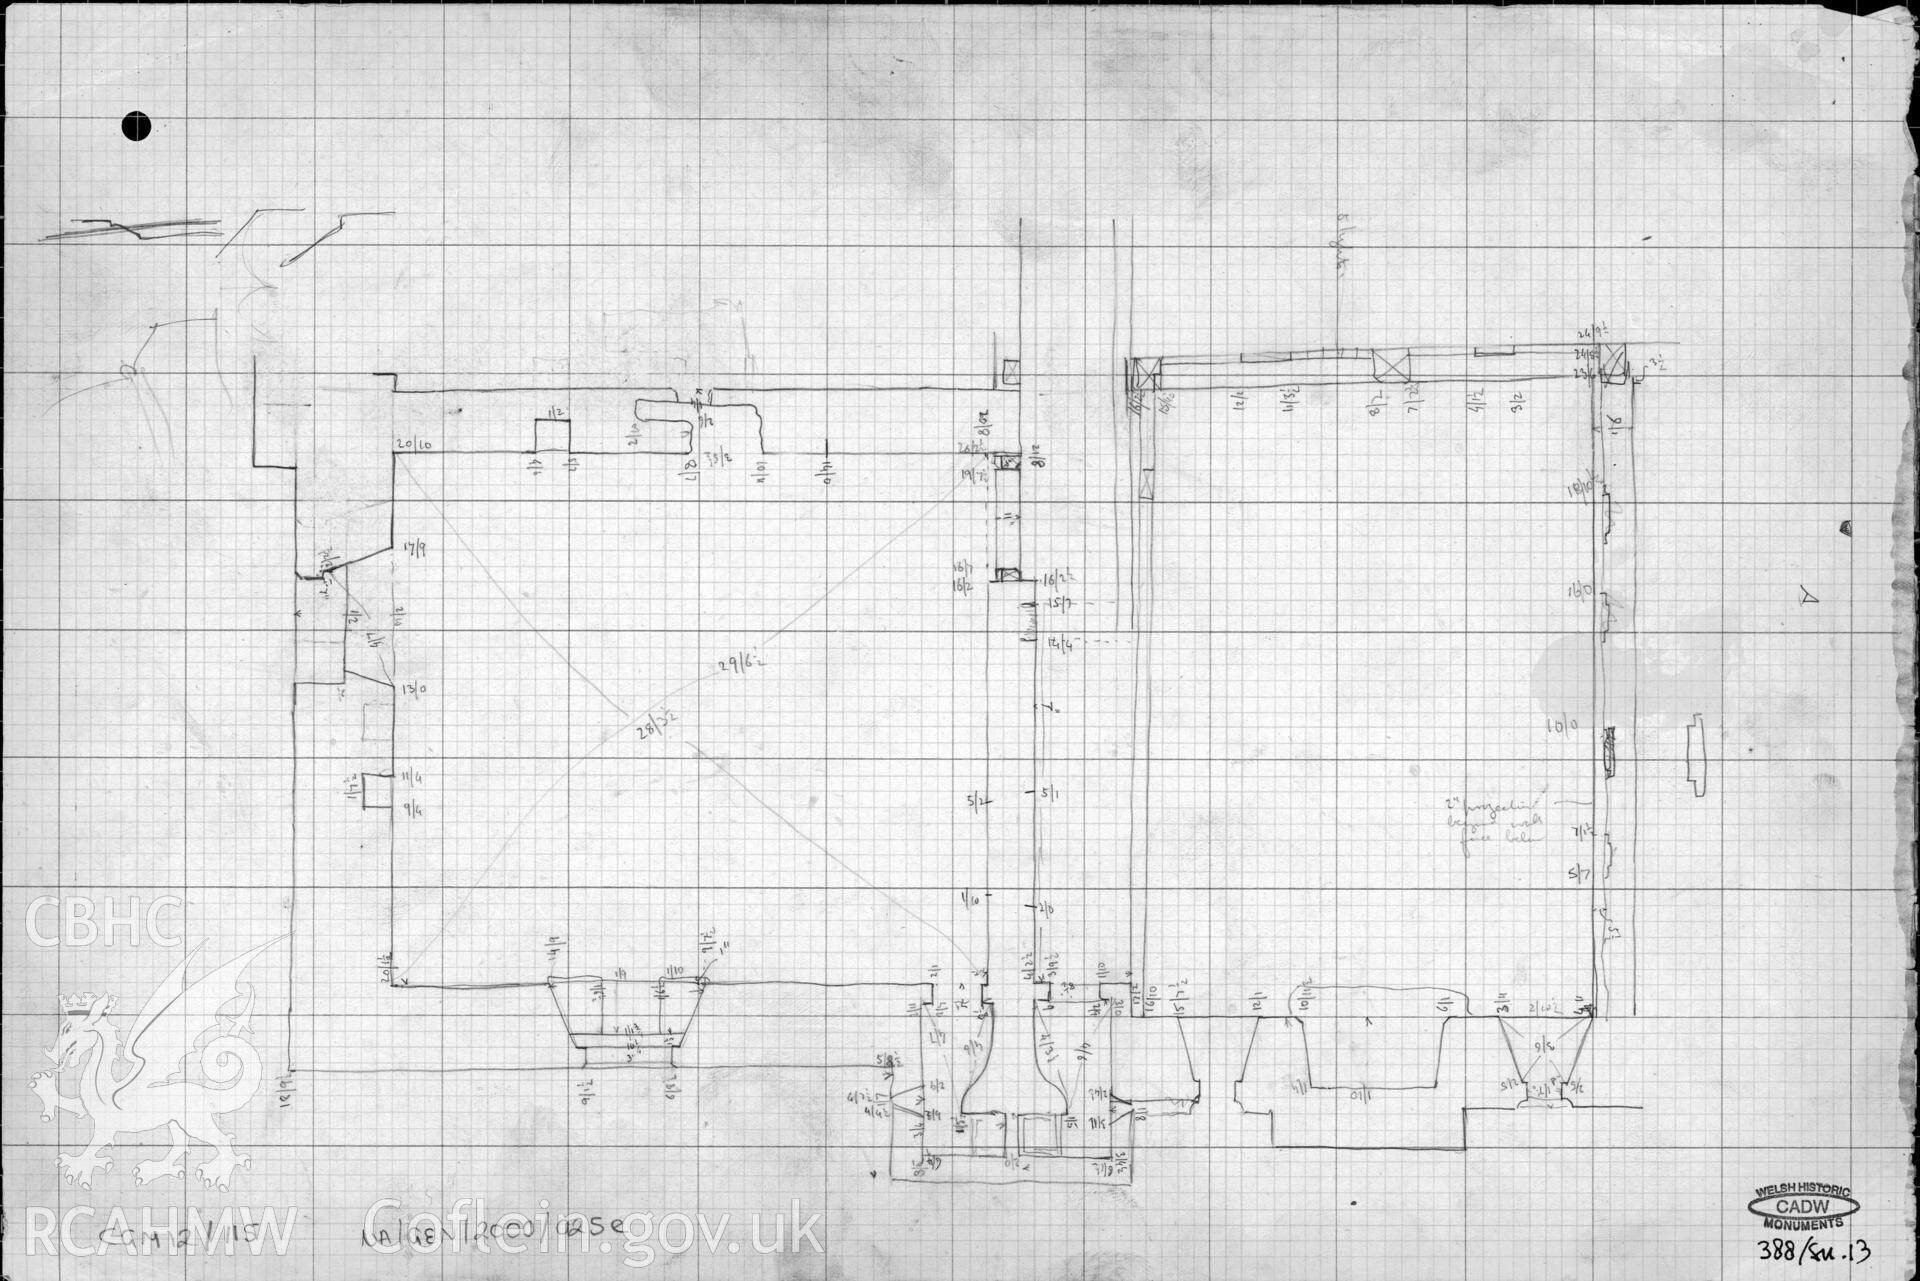 Tretower Court. Courtyard SW, sketch plan + dims. Cadw Ref. No: 388/sn.13.